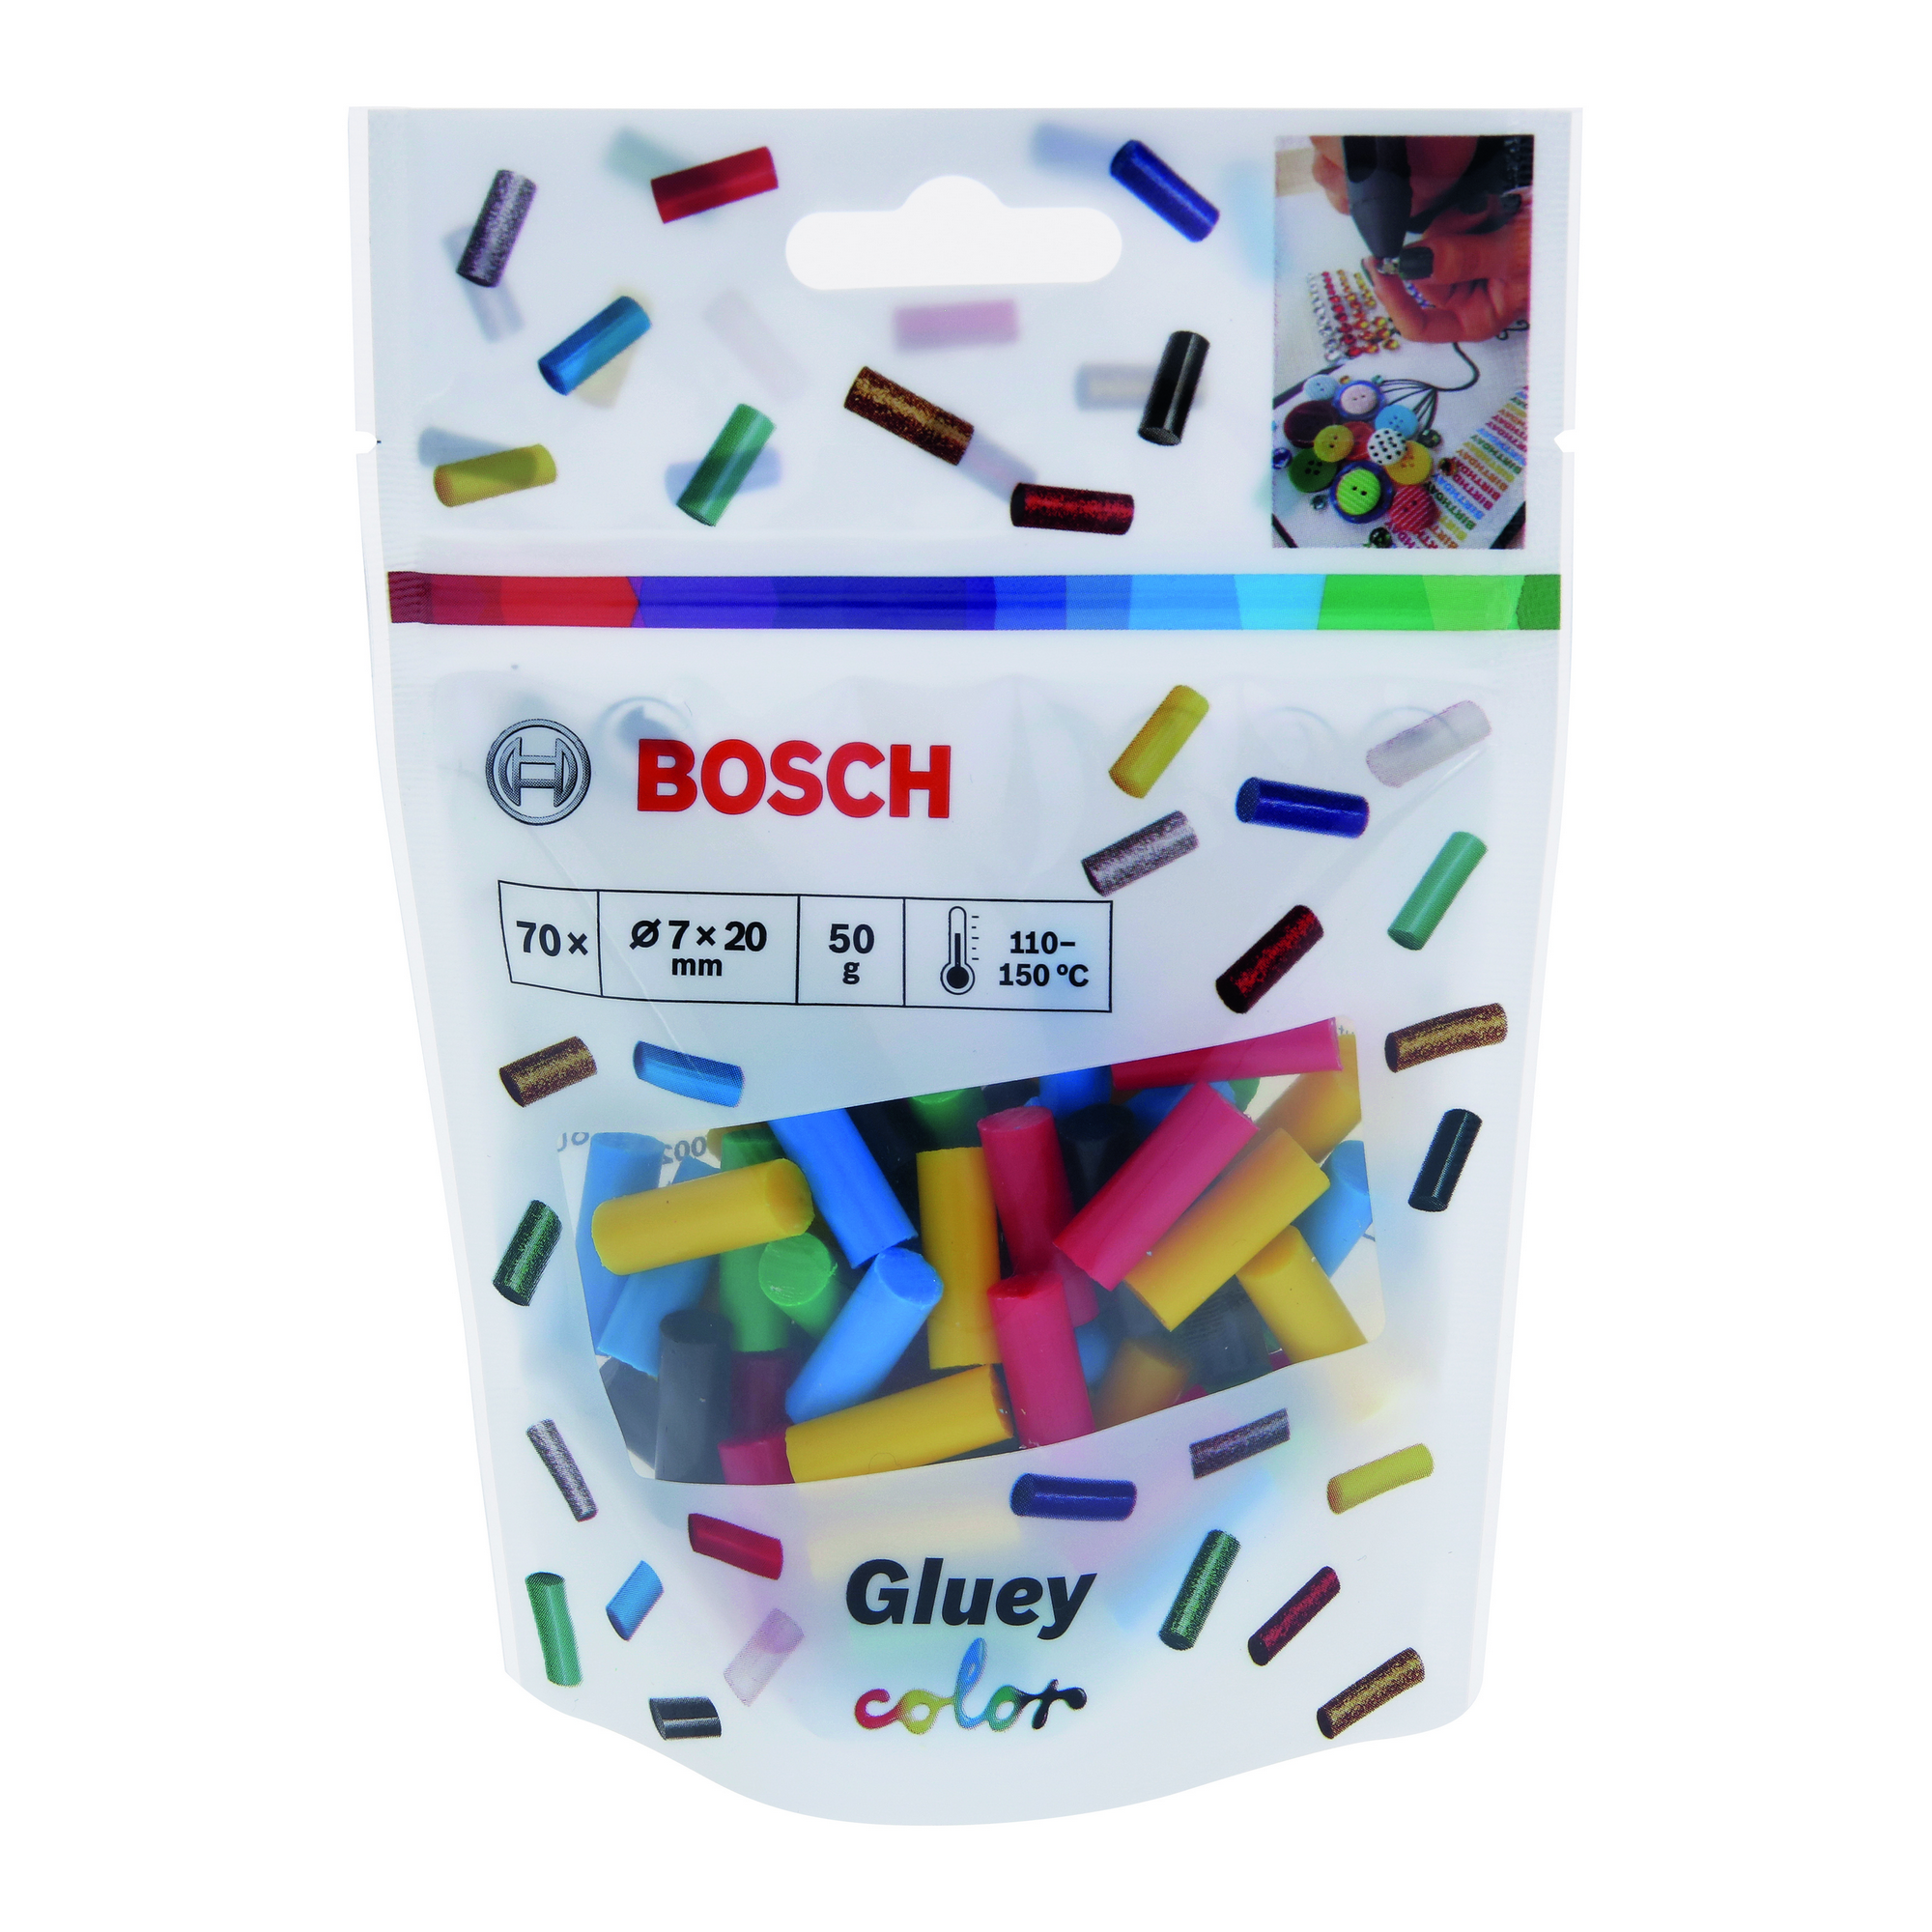 Heißklebesticks 'Gluey Color' 70 Stück + product picture